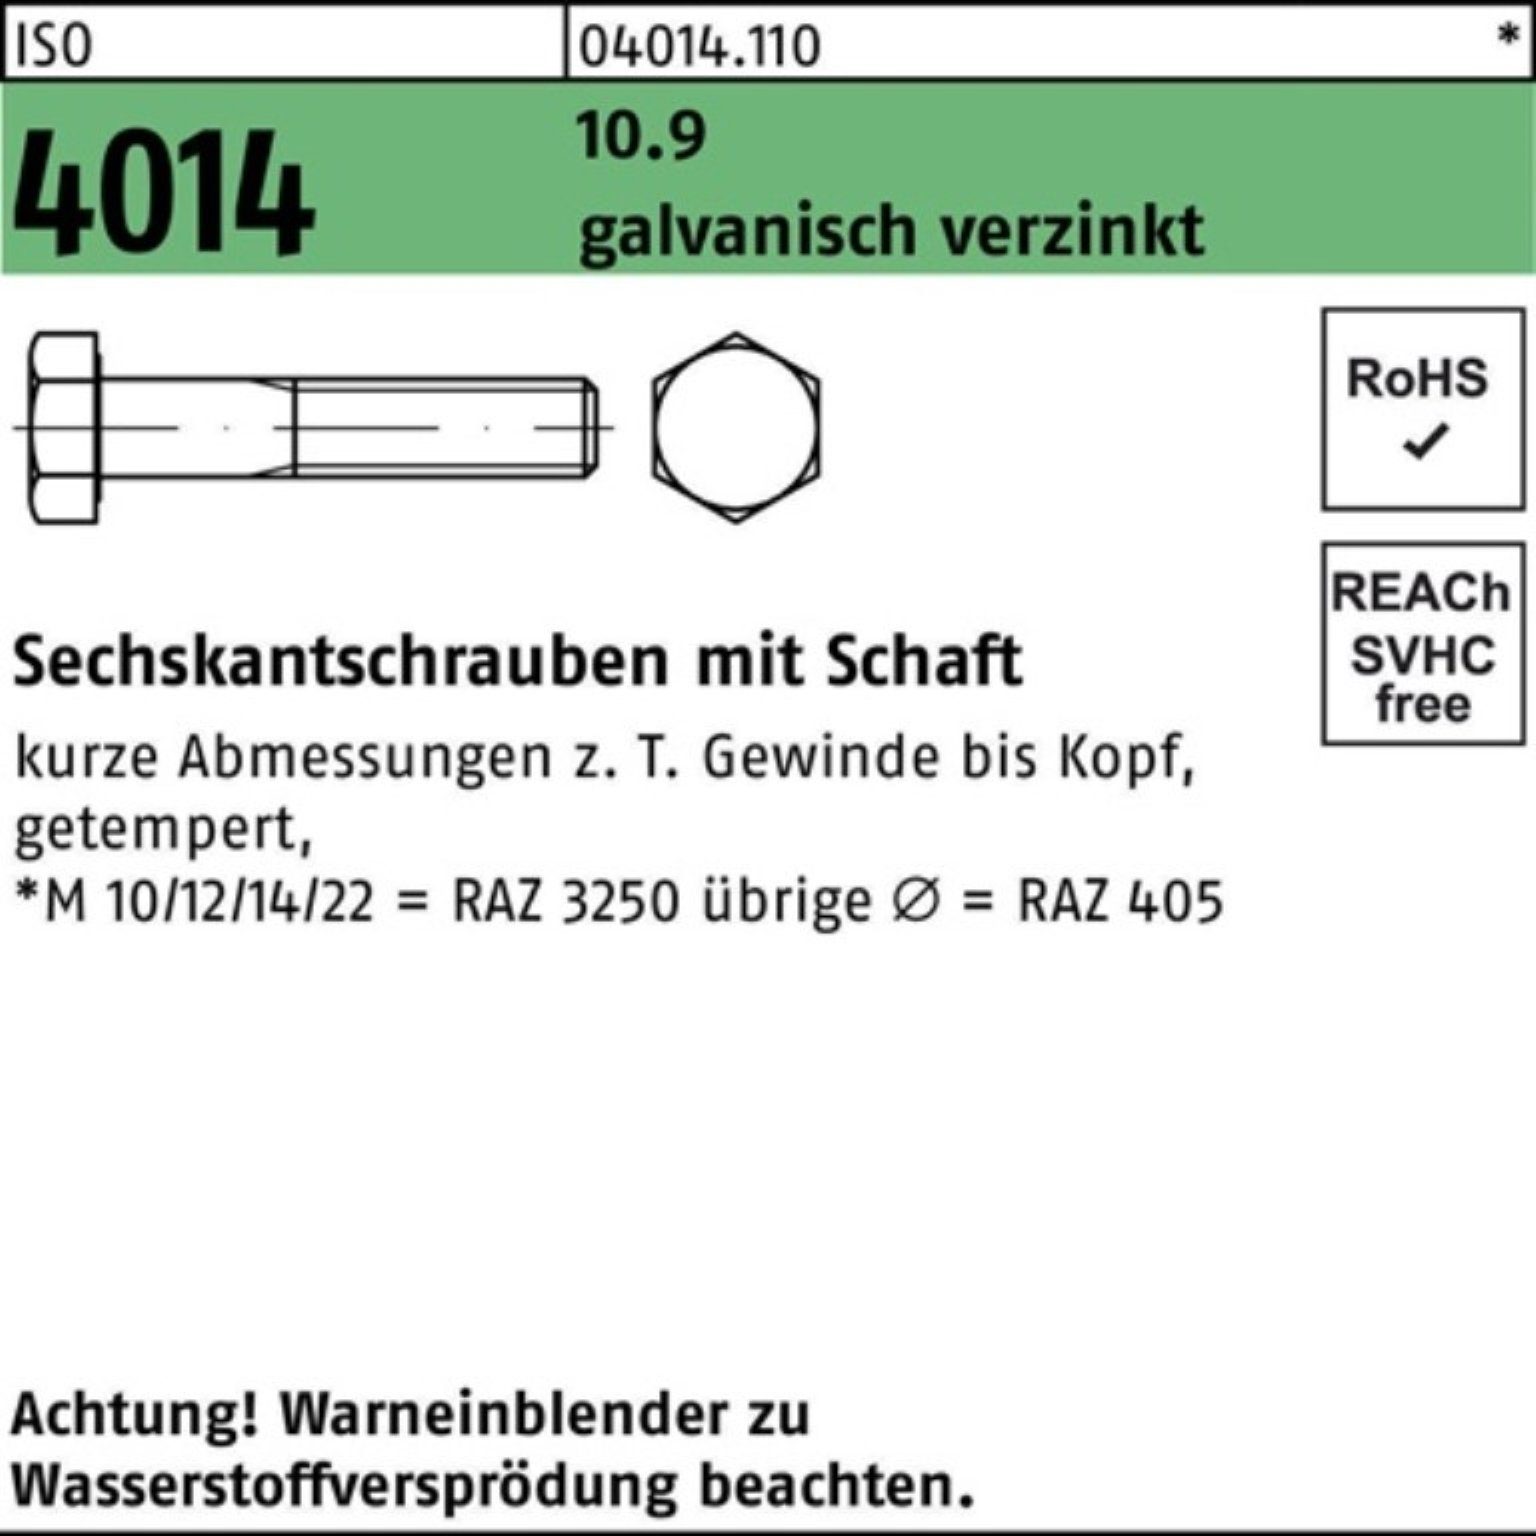 Sechskantschraube 10.9 galv.verz. Bufab 4014 Sechskantschraube 100er ISO 110 Schaft M30x Pack